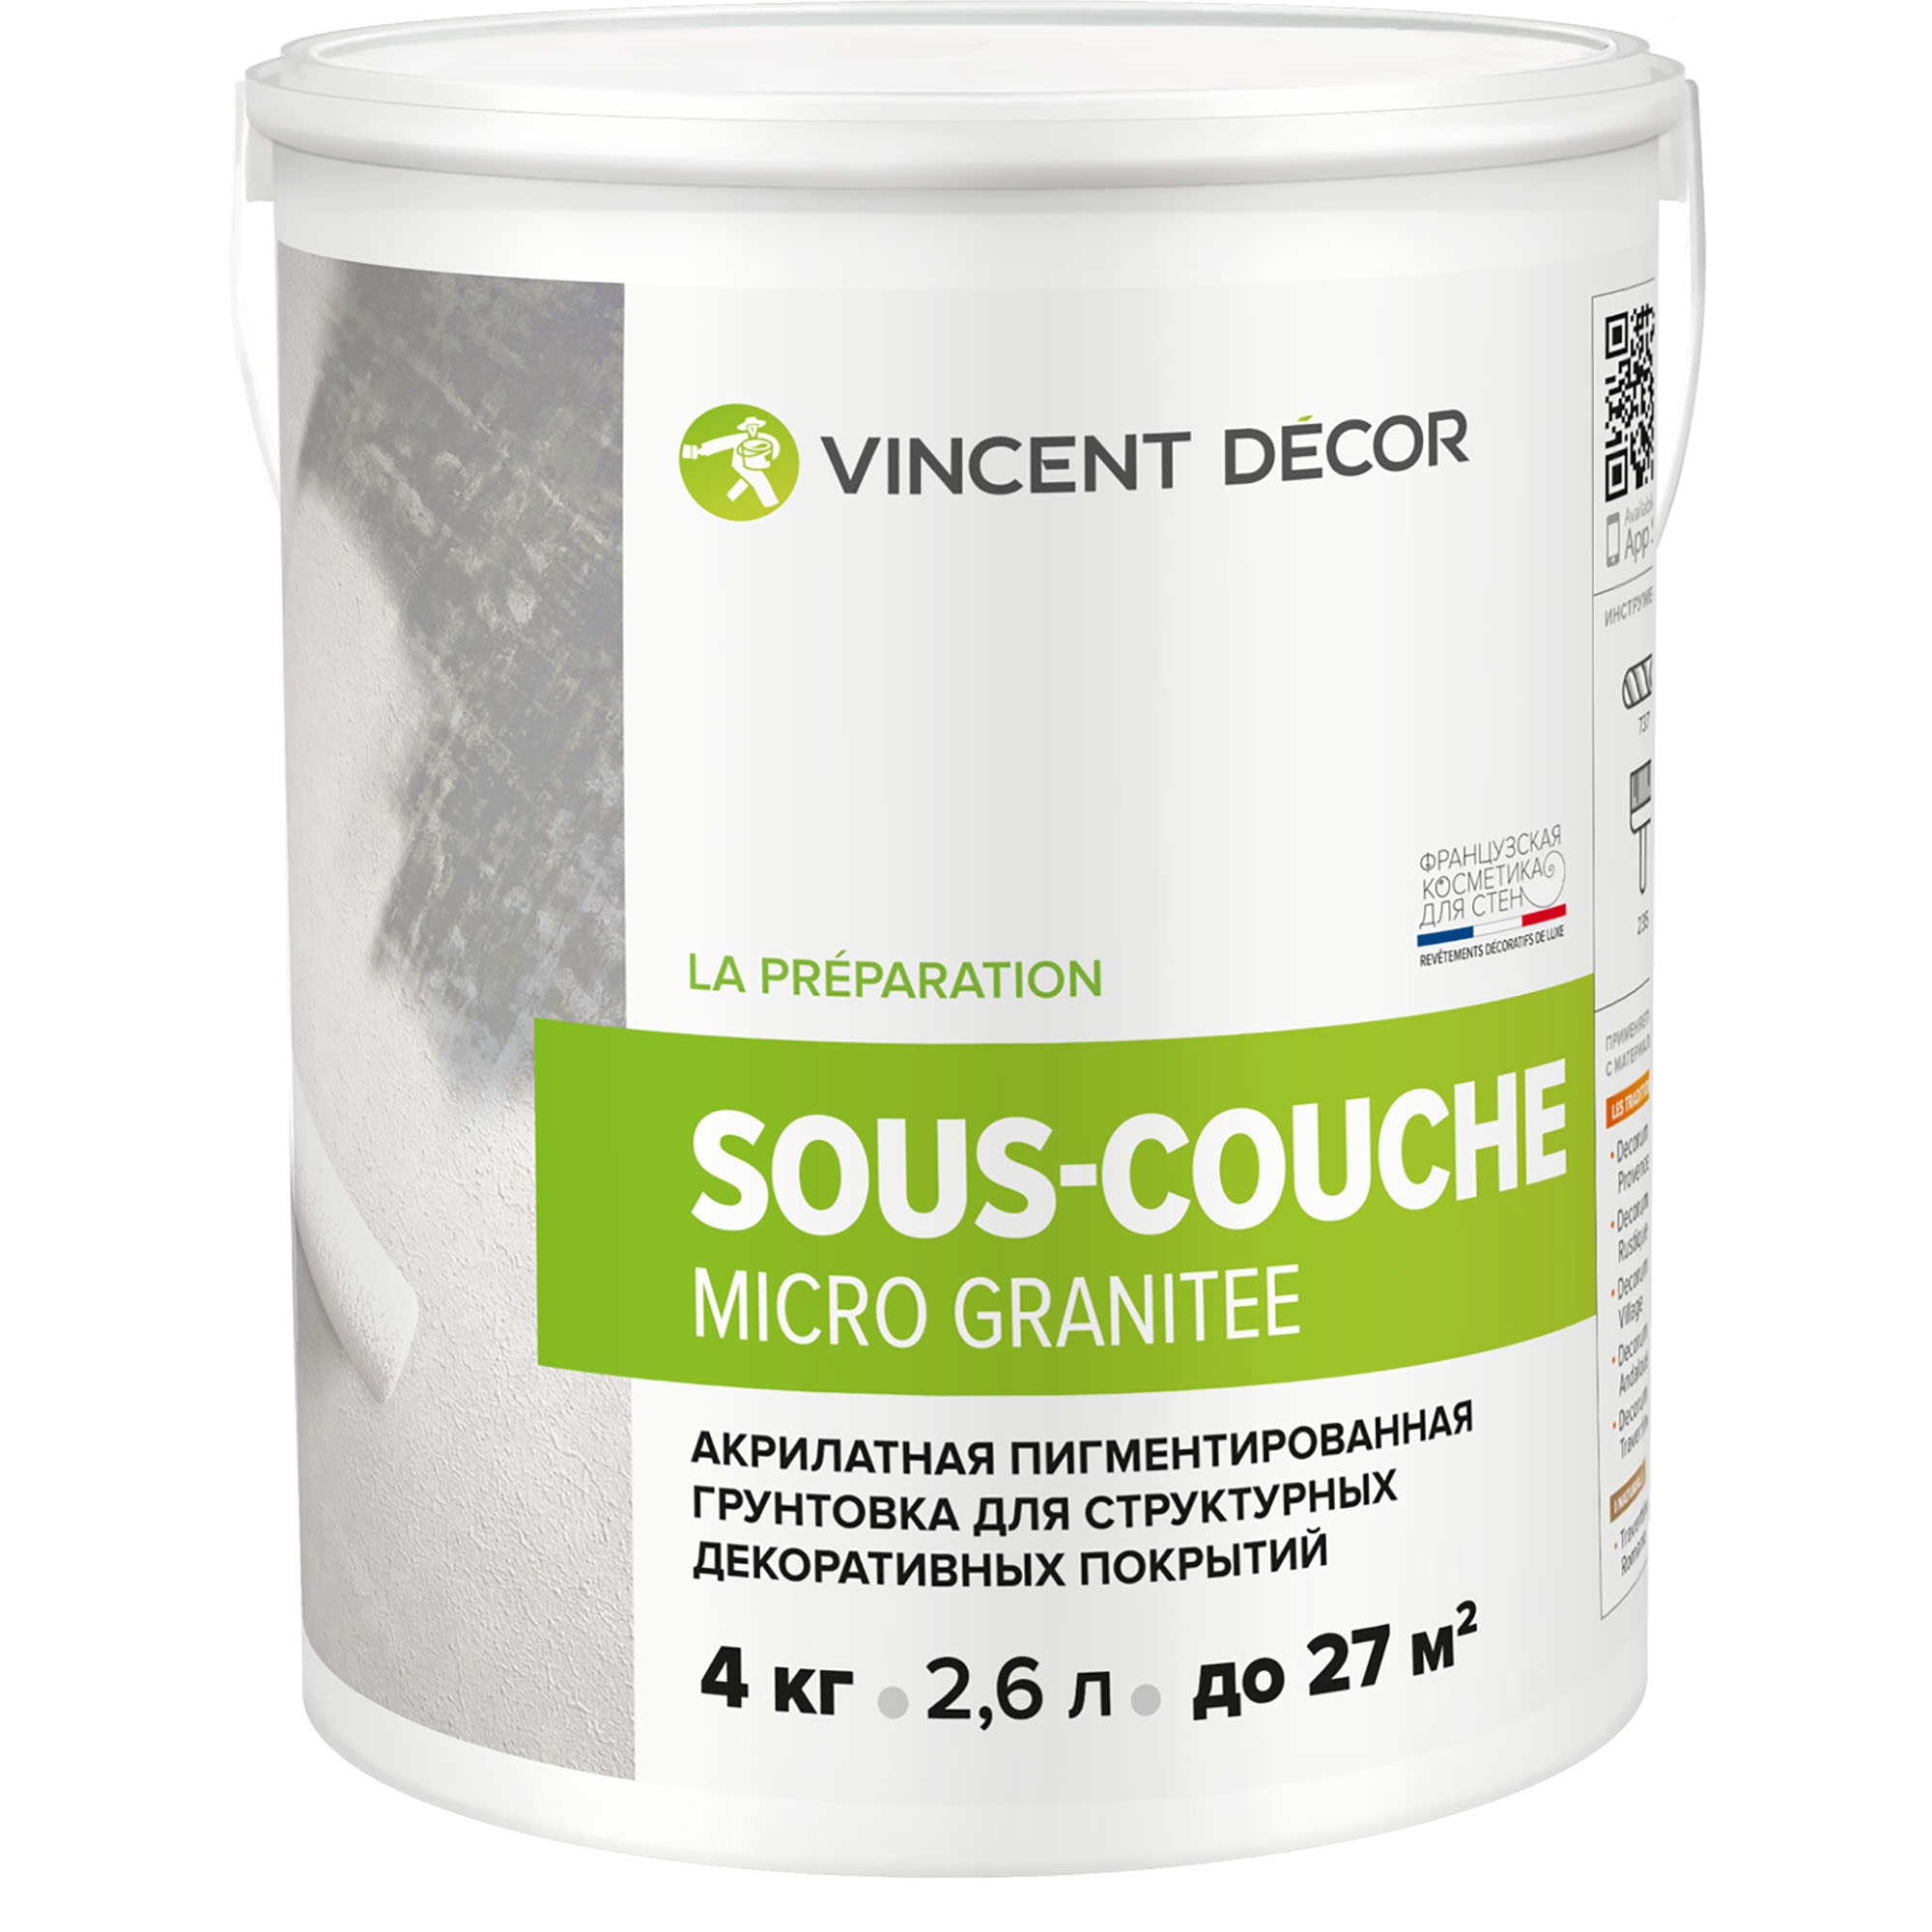 Грунтовка для структурных декоративных покрытий Vincent Decor Sous-Couсhe microgranite 4 кг